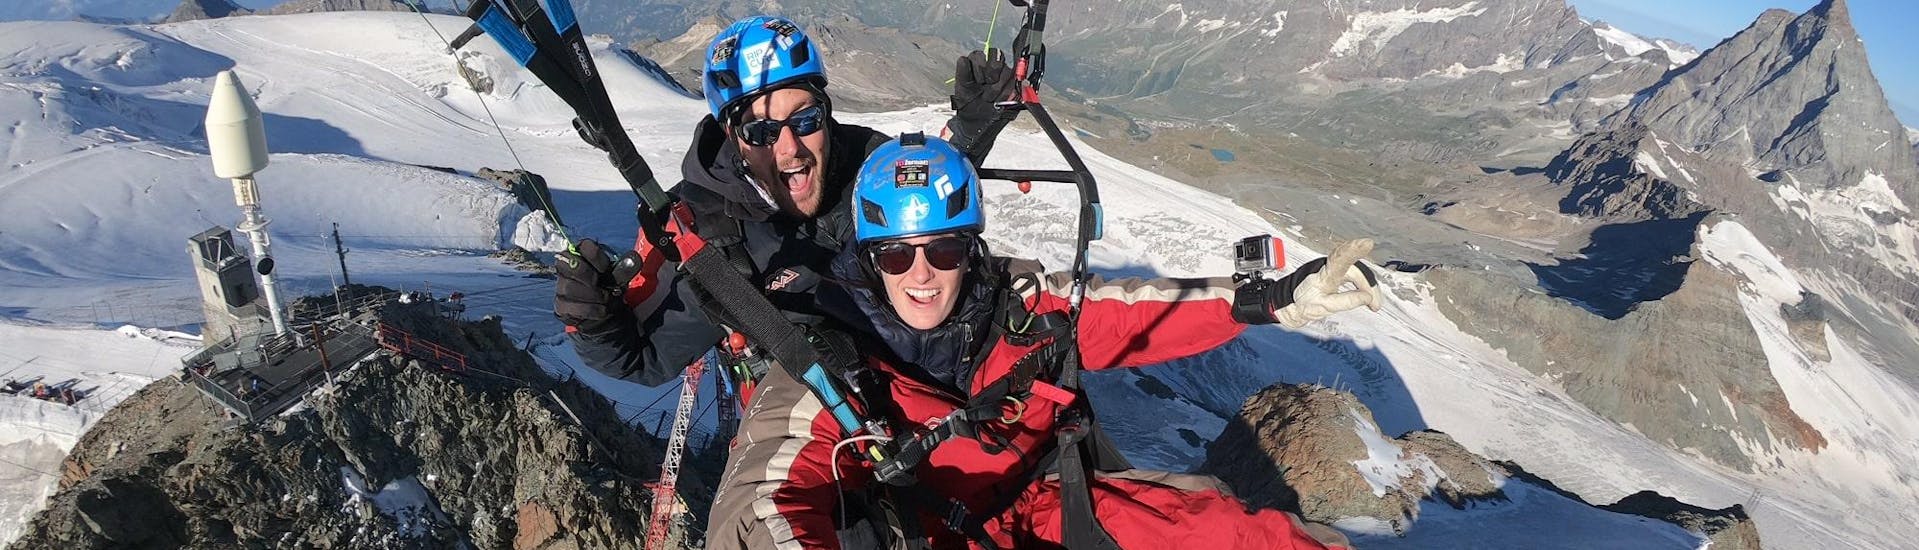 A team from Matterhorn Paragliding over the glaciers near Zermatt.